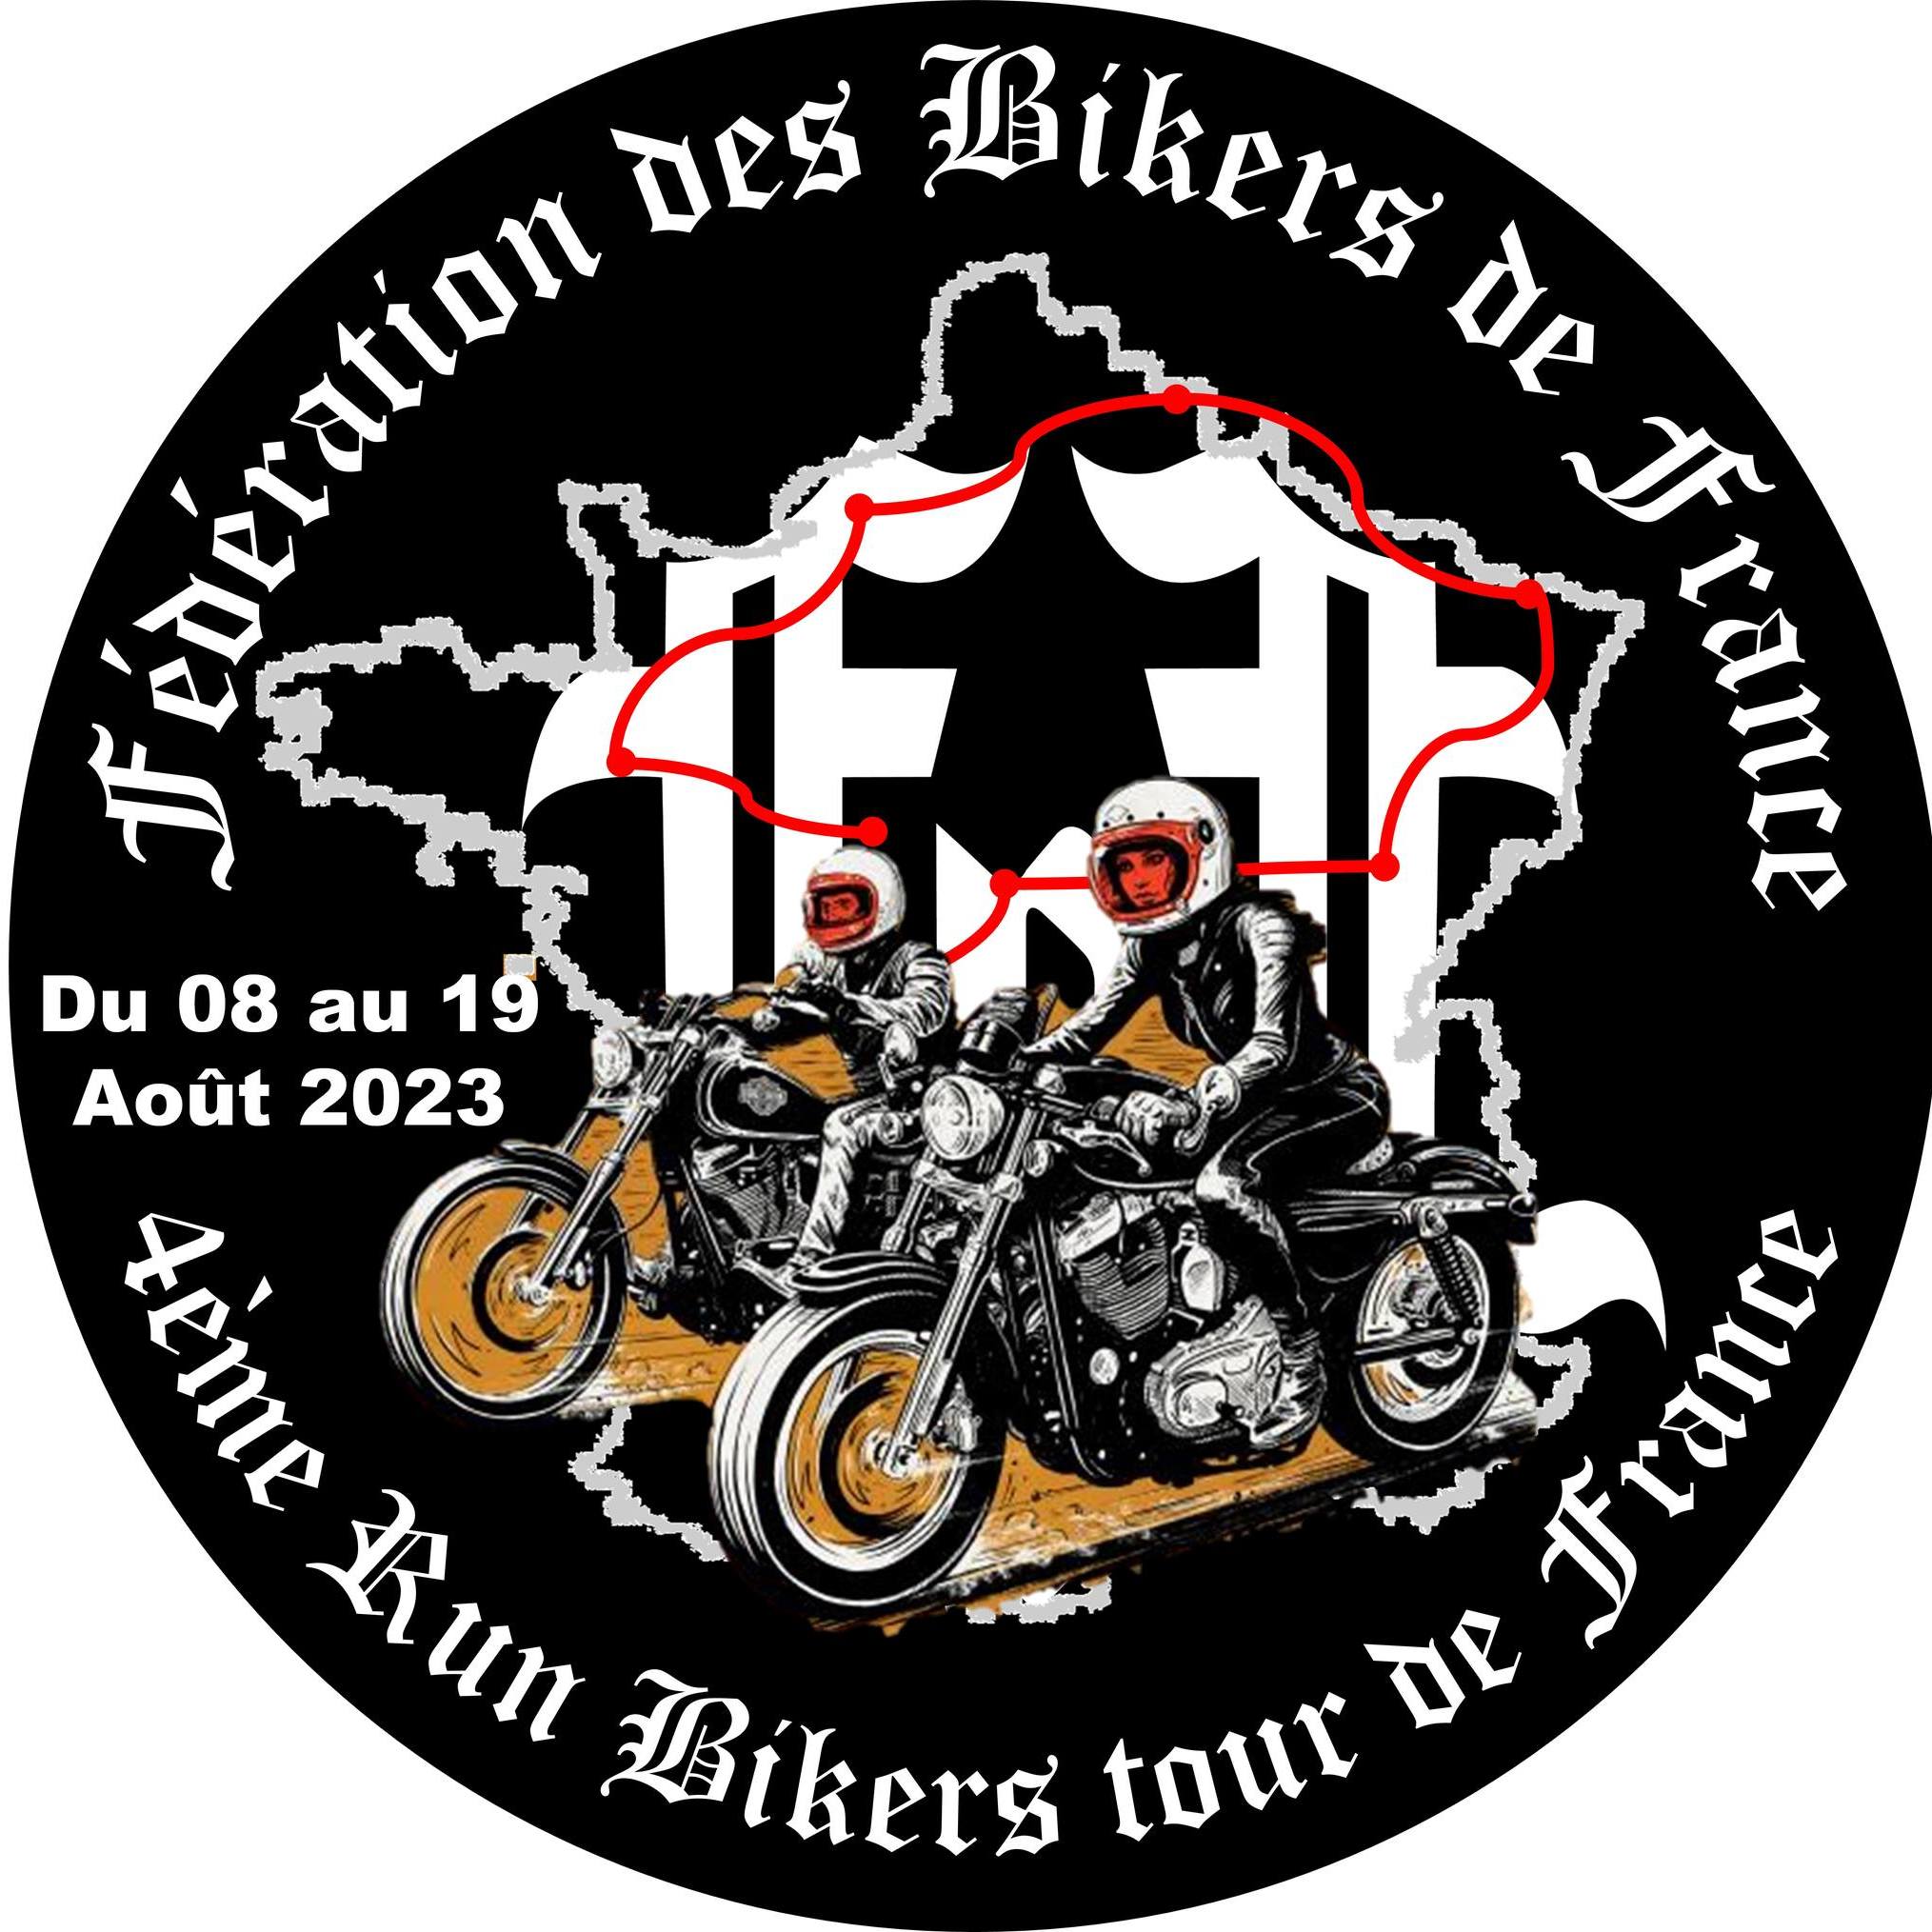 Fédération des Bikers de France